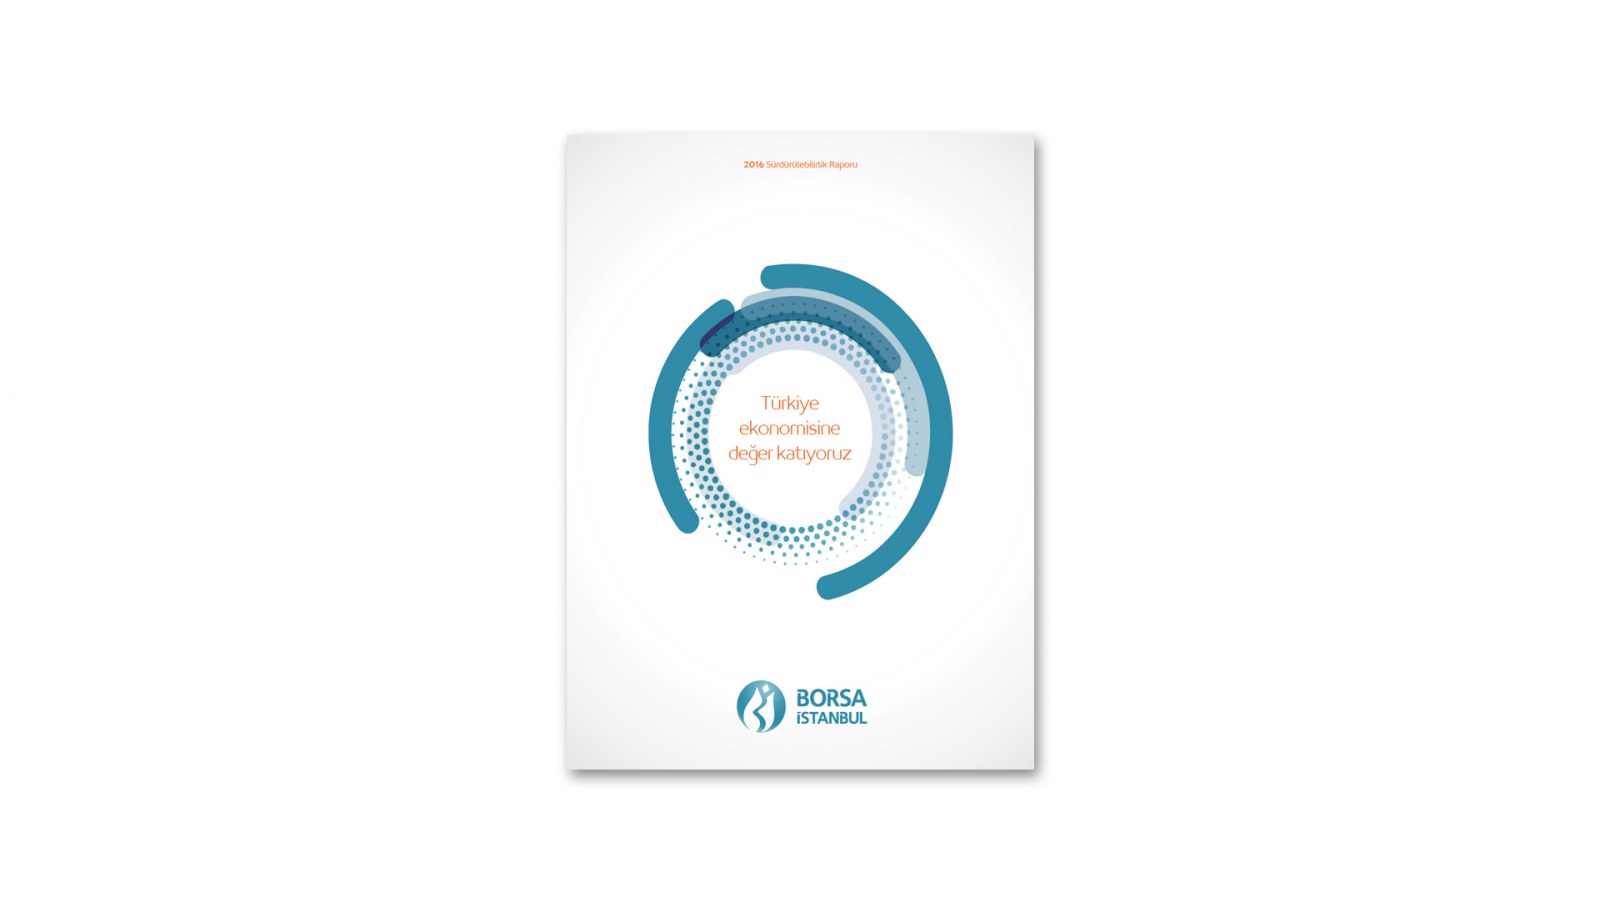 BORSA İSTANBUL / 2016 Sürdürülebilirlik Raporu / 2016 Sustainability Report